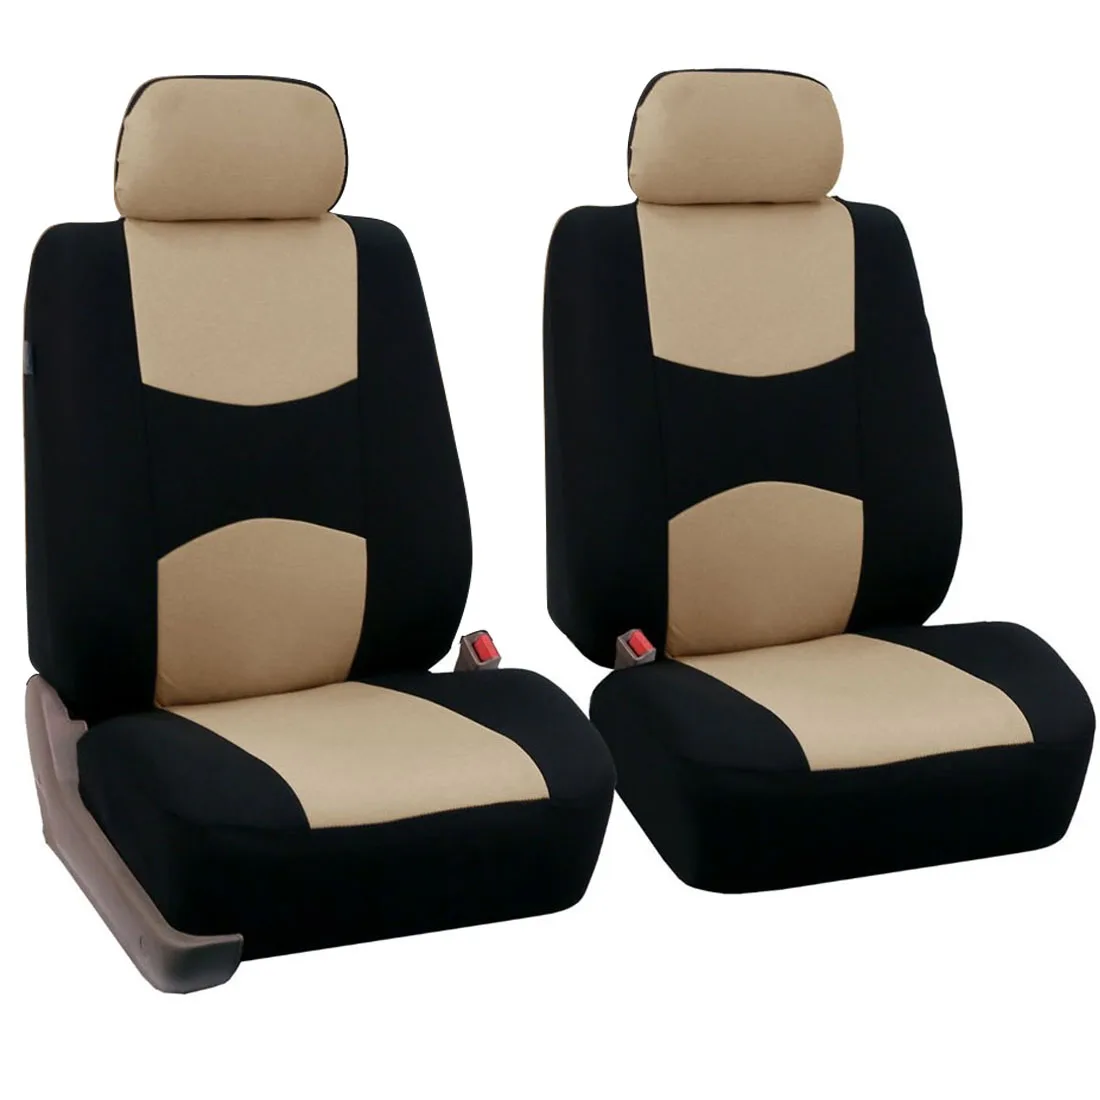 Dewtreetali 9 шт/4 шт набор задних передних автомобильных чехлов для сидений универсальные чехлы для сидений автомобиля протектор полиэстер четыре сезона